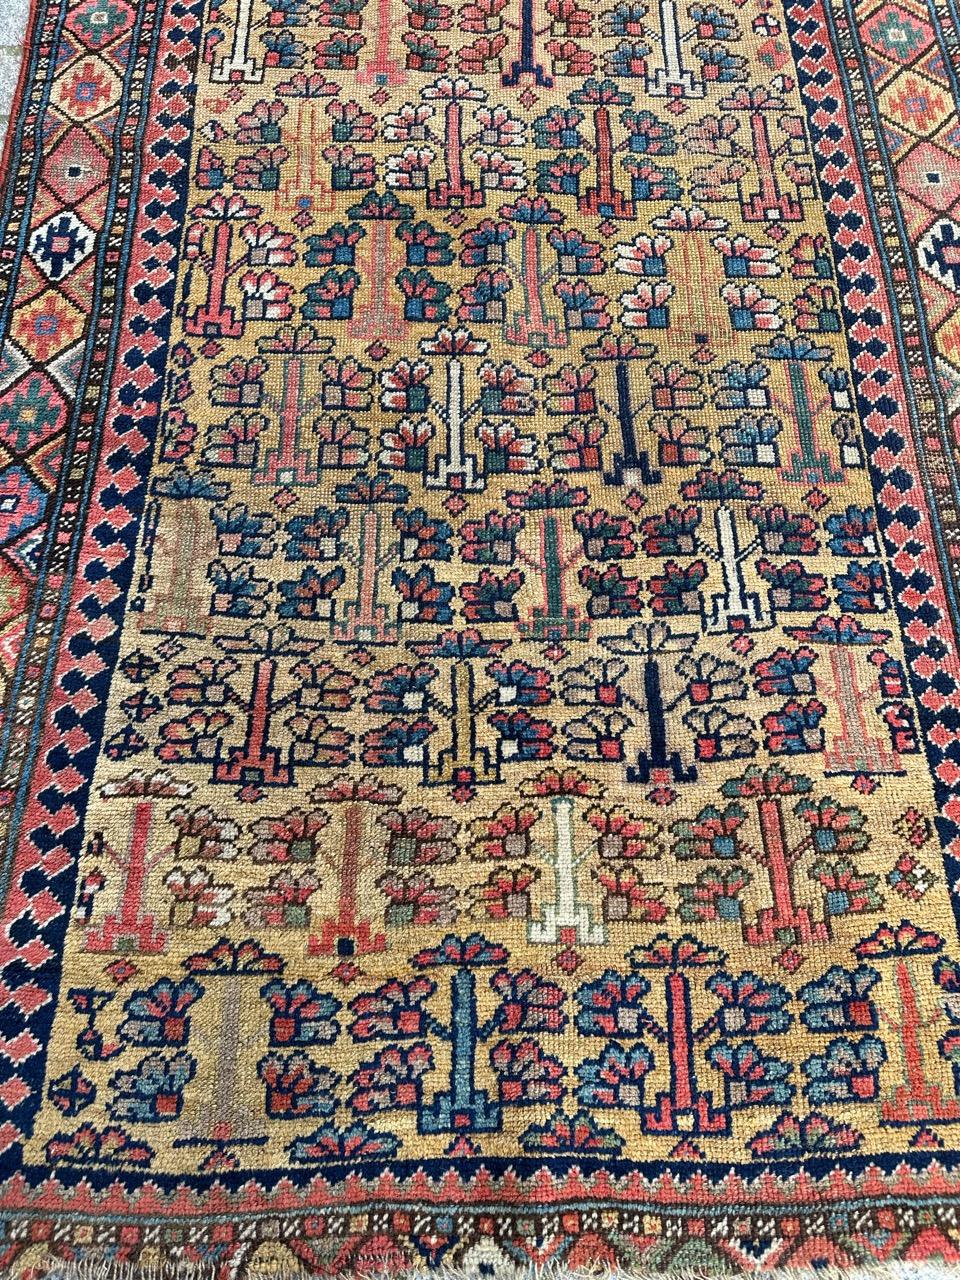 Sehr dekorativer und antiker kaukasischer oder kurdischer Teppich aus der Mitte des 19. Jahrhunderts mit schönen stilisierten Mustern und schönen natürlichen Farben, komplett handgeknüpft mit Wolle auf Wollgrund.

✨✨✨
